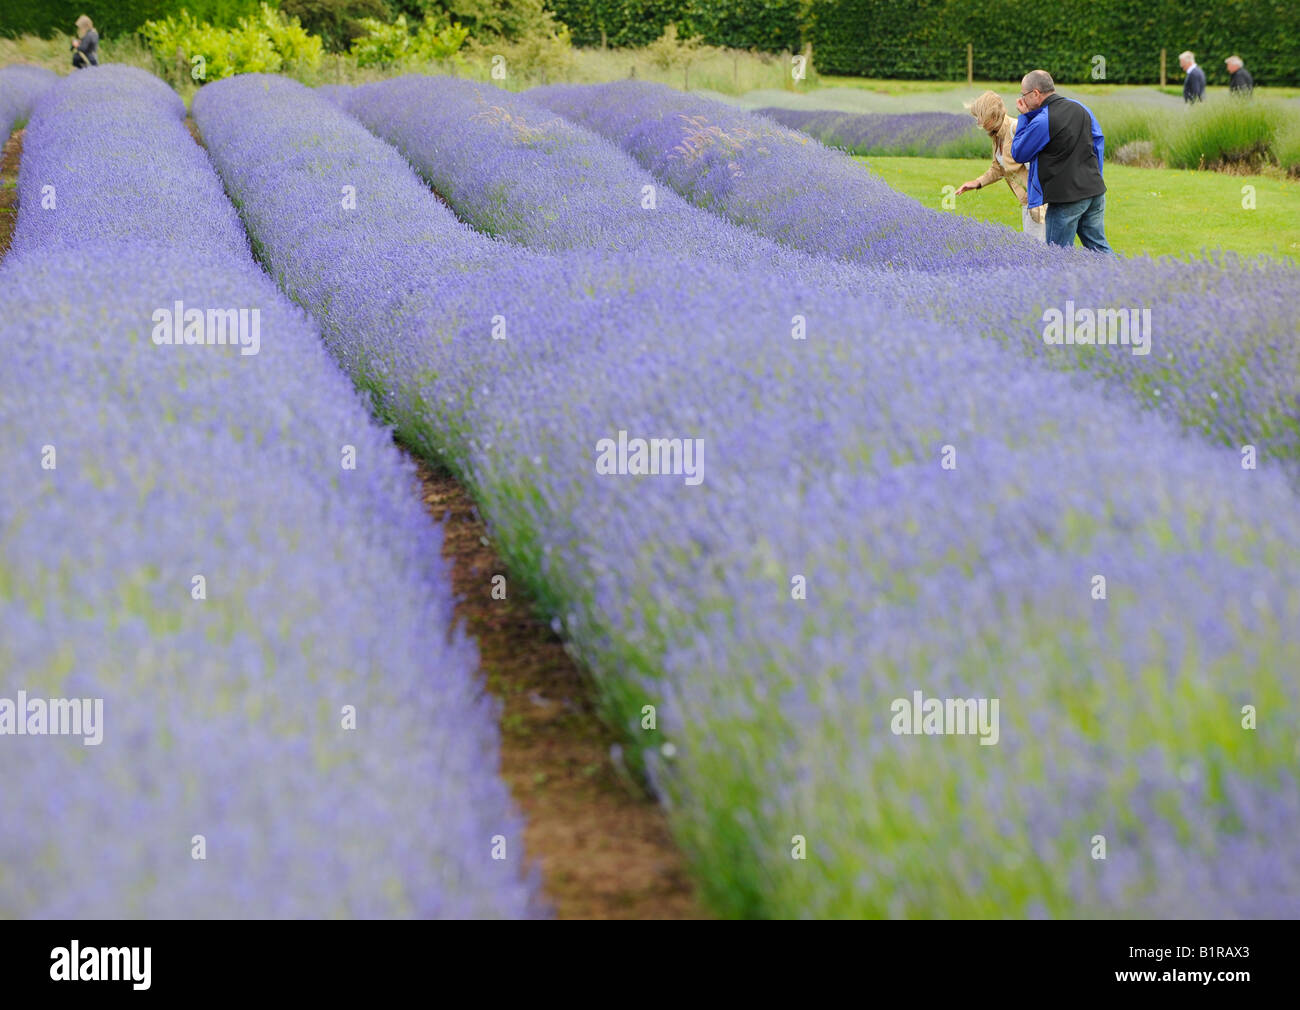 Snowshill Lavender Farm: Besucher genießen Sie einen Rundgang durch die Lavendelfelder und Brennerei. Bild von Jim Holden. Stockfoto